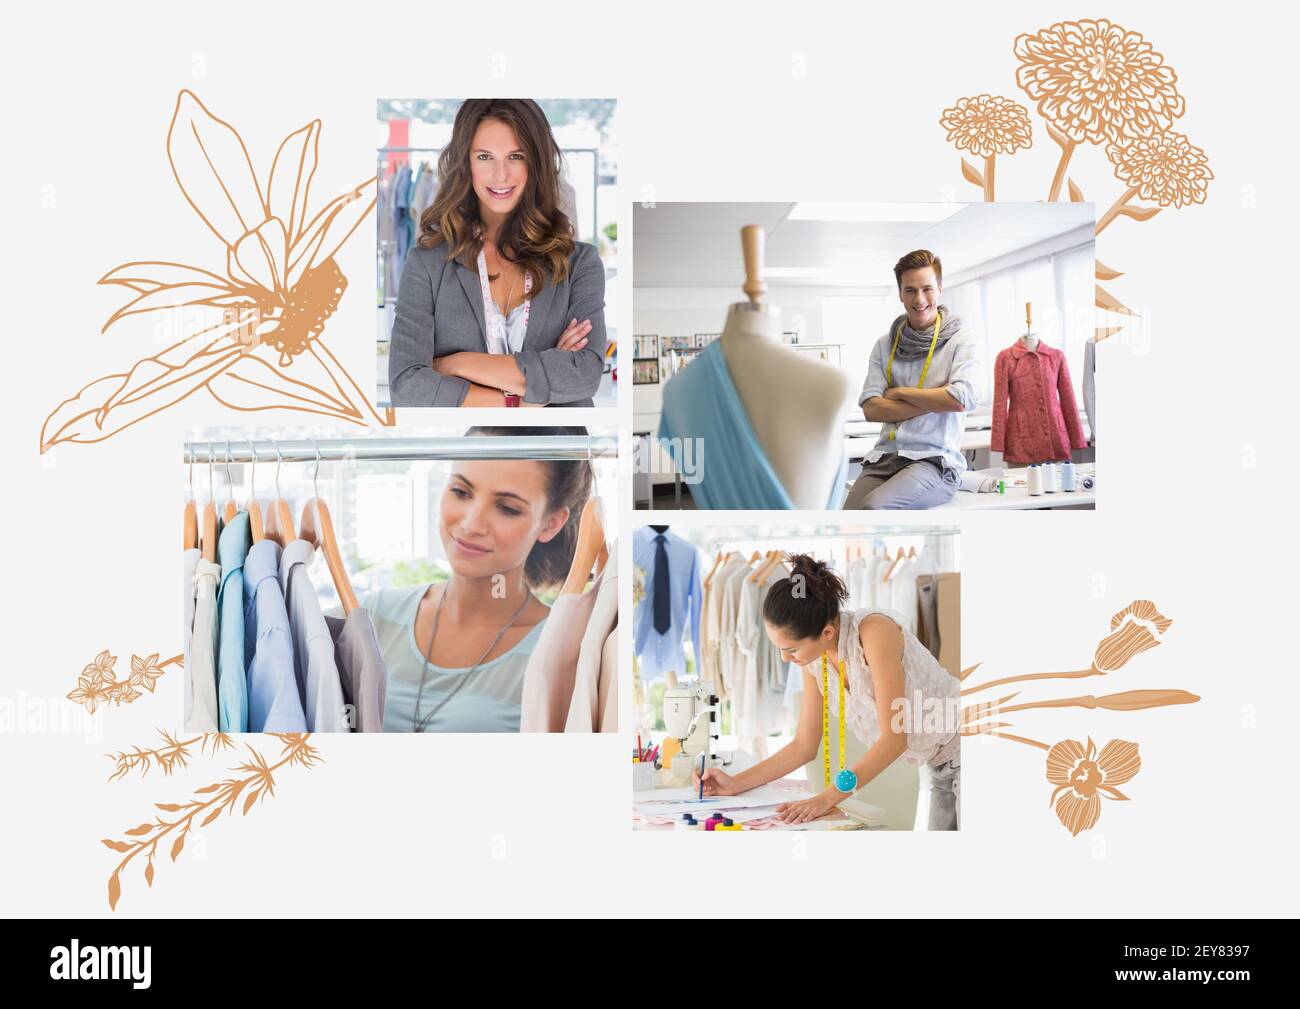 Komposition von vier Fotos von Modedesignern mit beigefarbener Pflanze Zeichnungen auf weißem Hintergrund Stockfoto